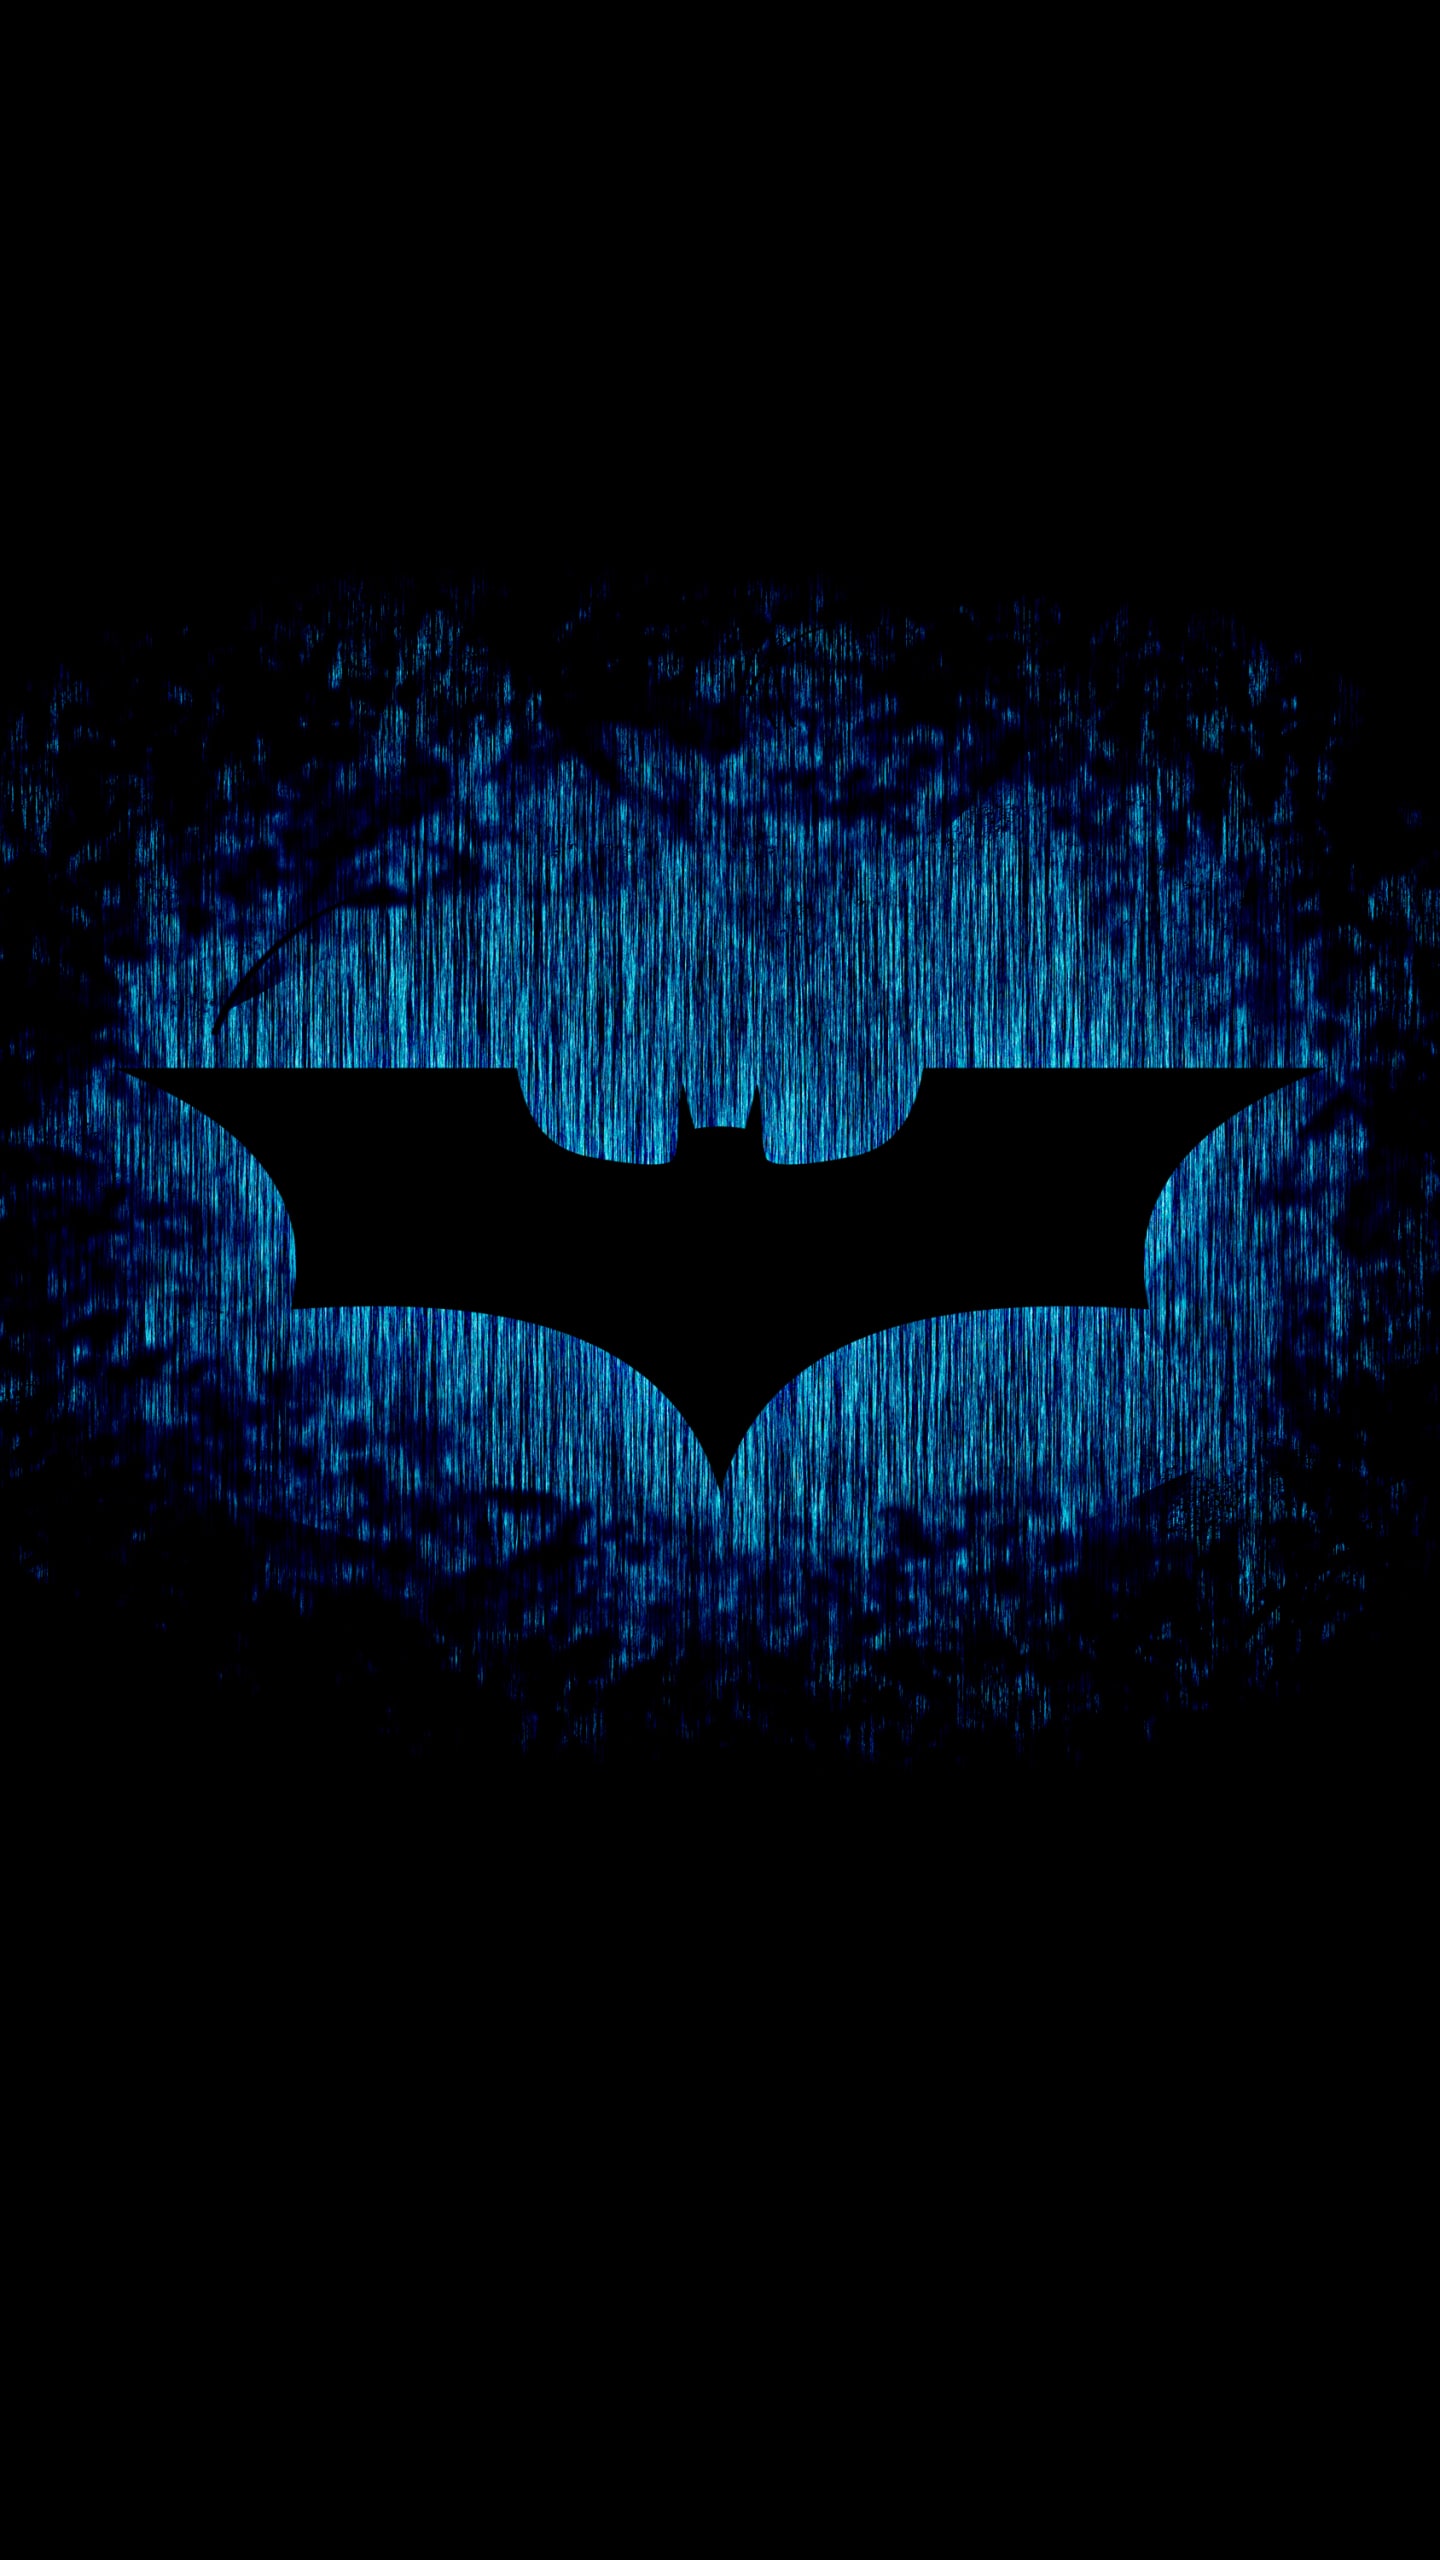 Batman Wallpaper - NawPic